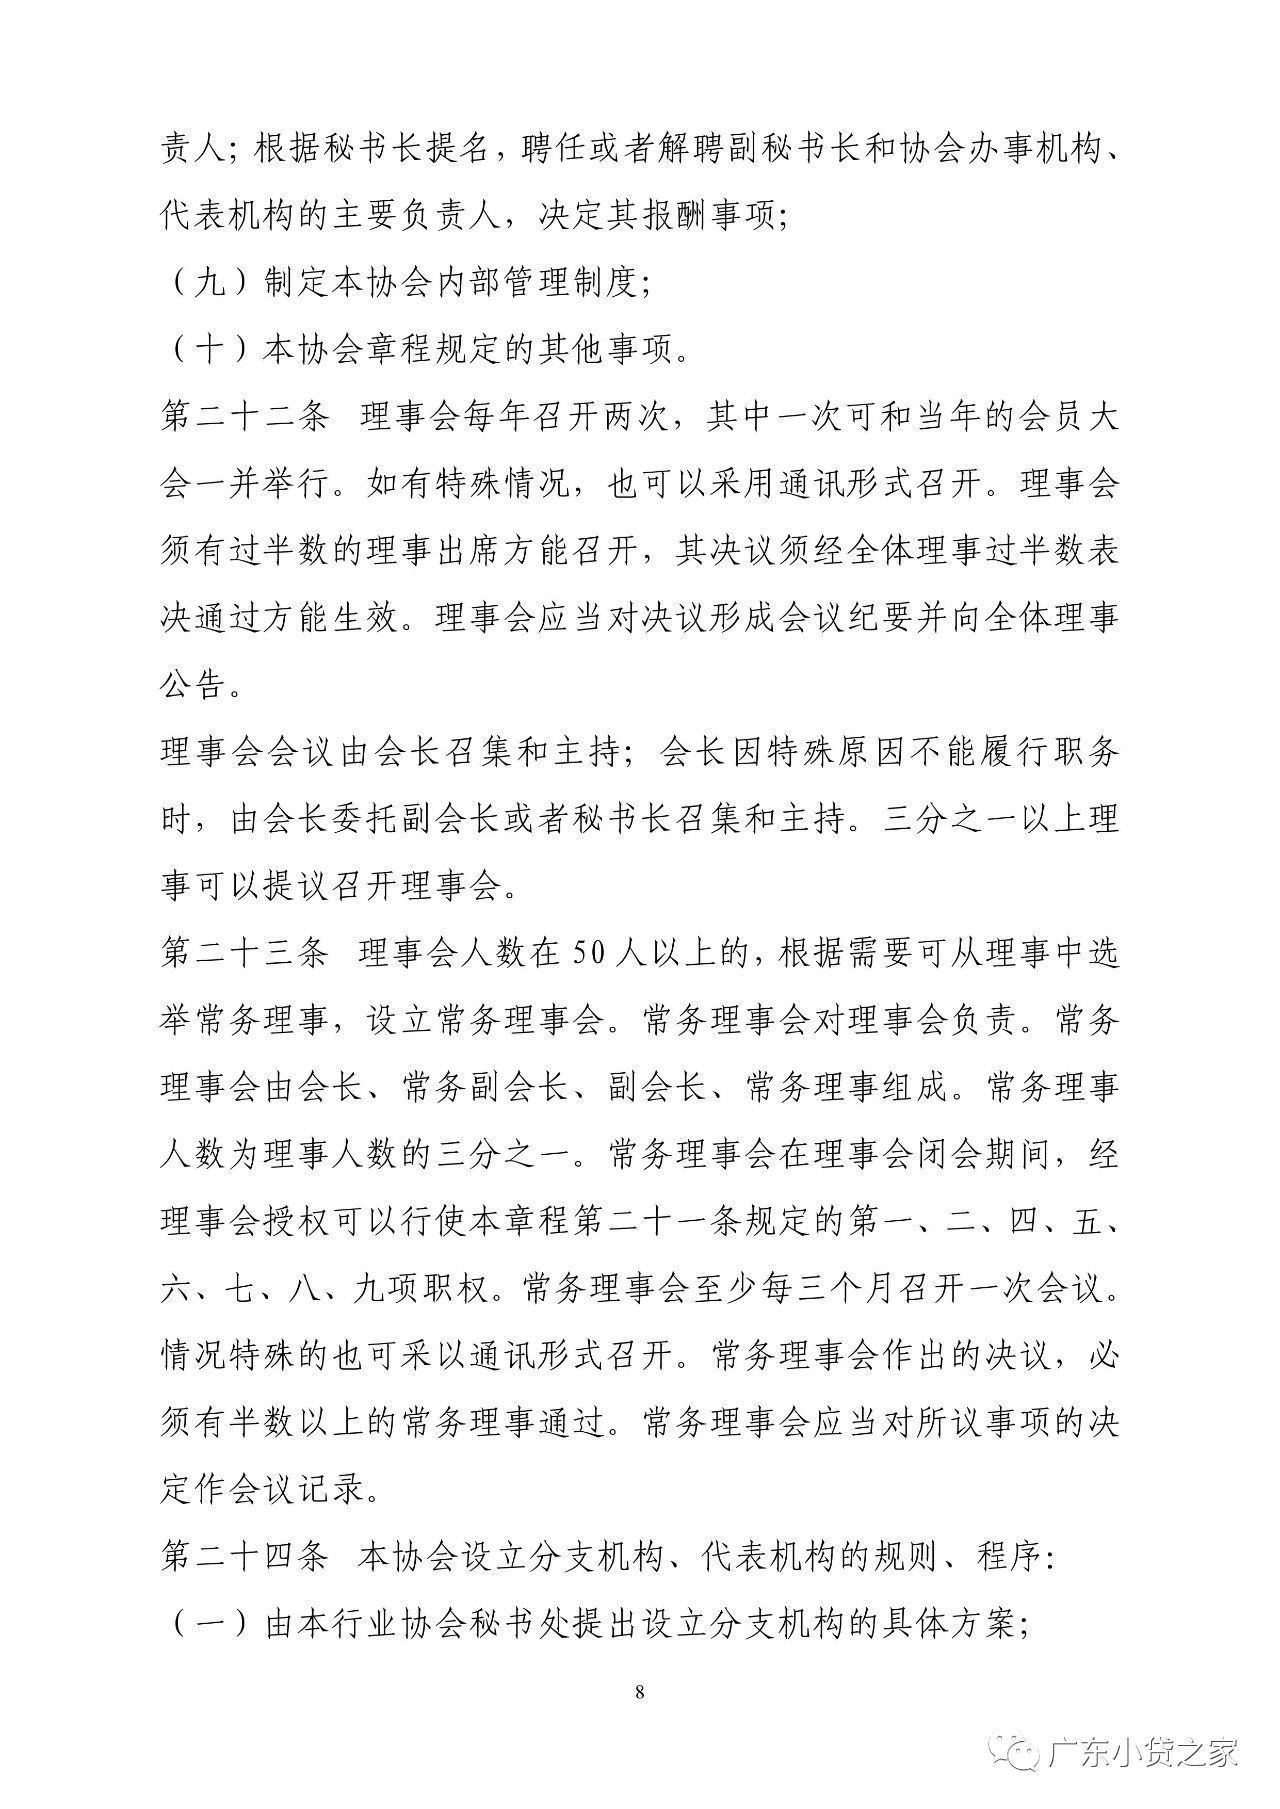 【协会通知】关于广东省小额贷款公司协会更新协会章程的通知